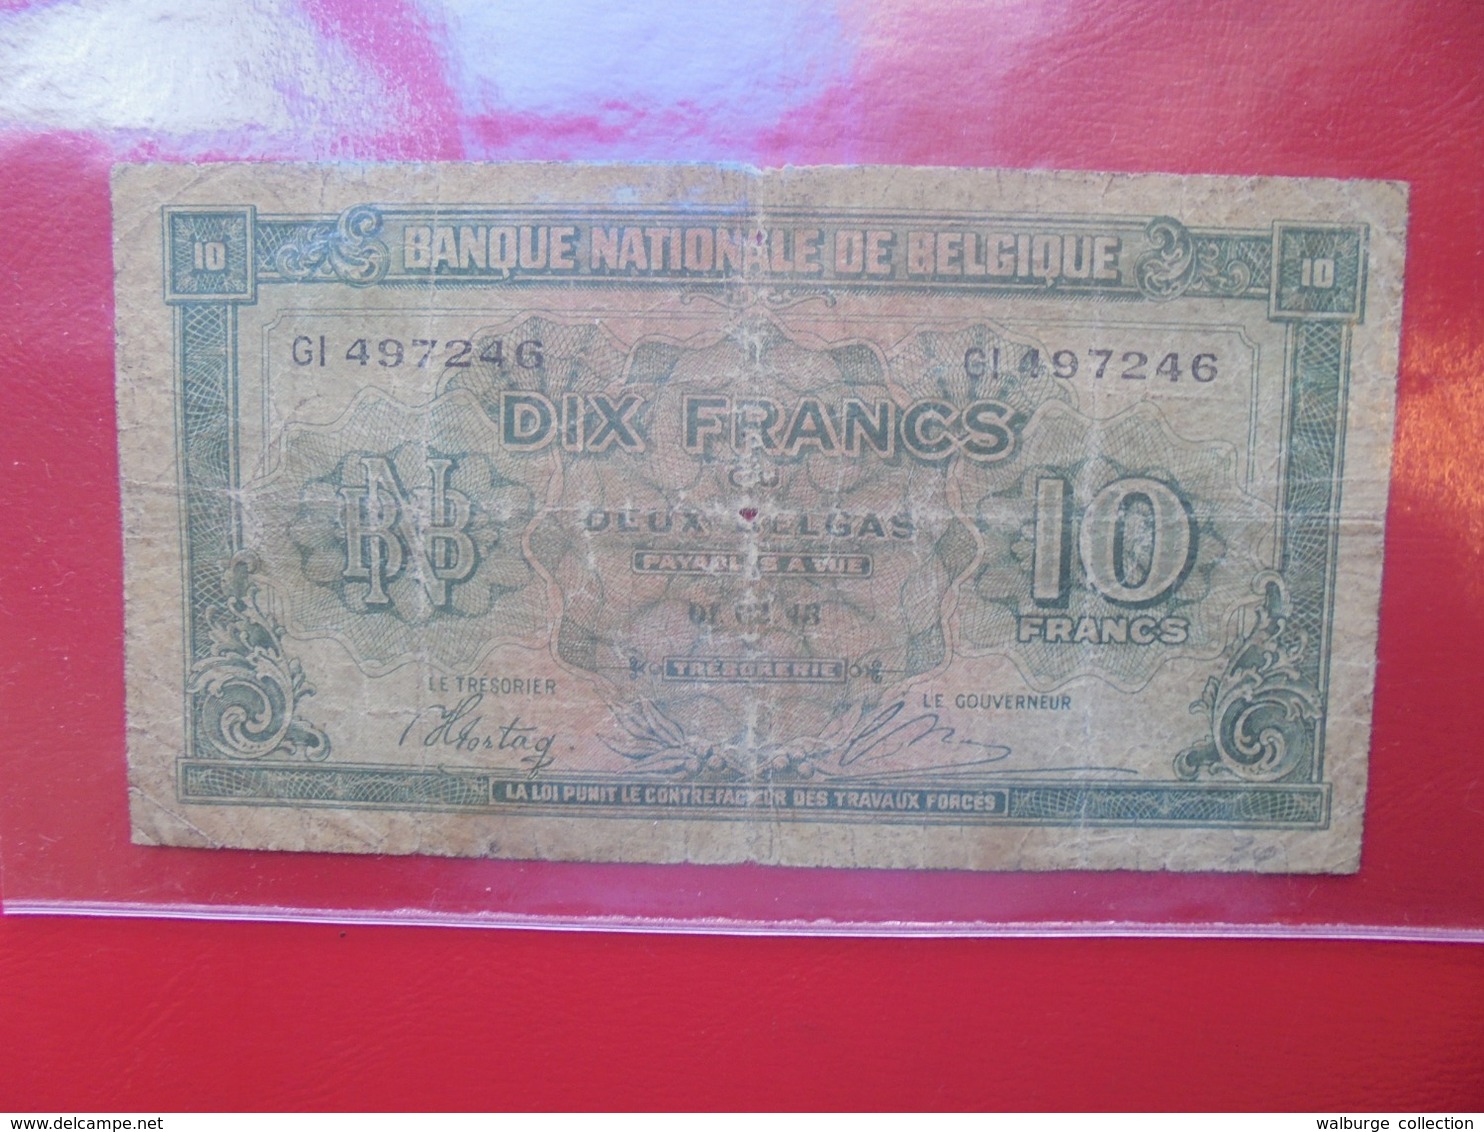 BELGIQUE 10 FRANCS 1943 CIRCULER (B.7) - 10 Francs-2 Belgas